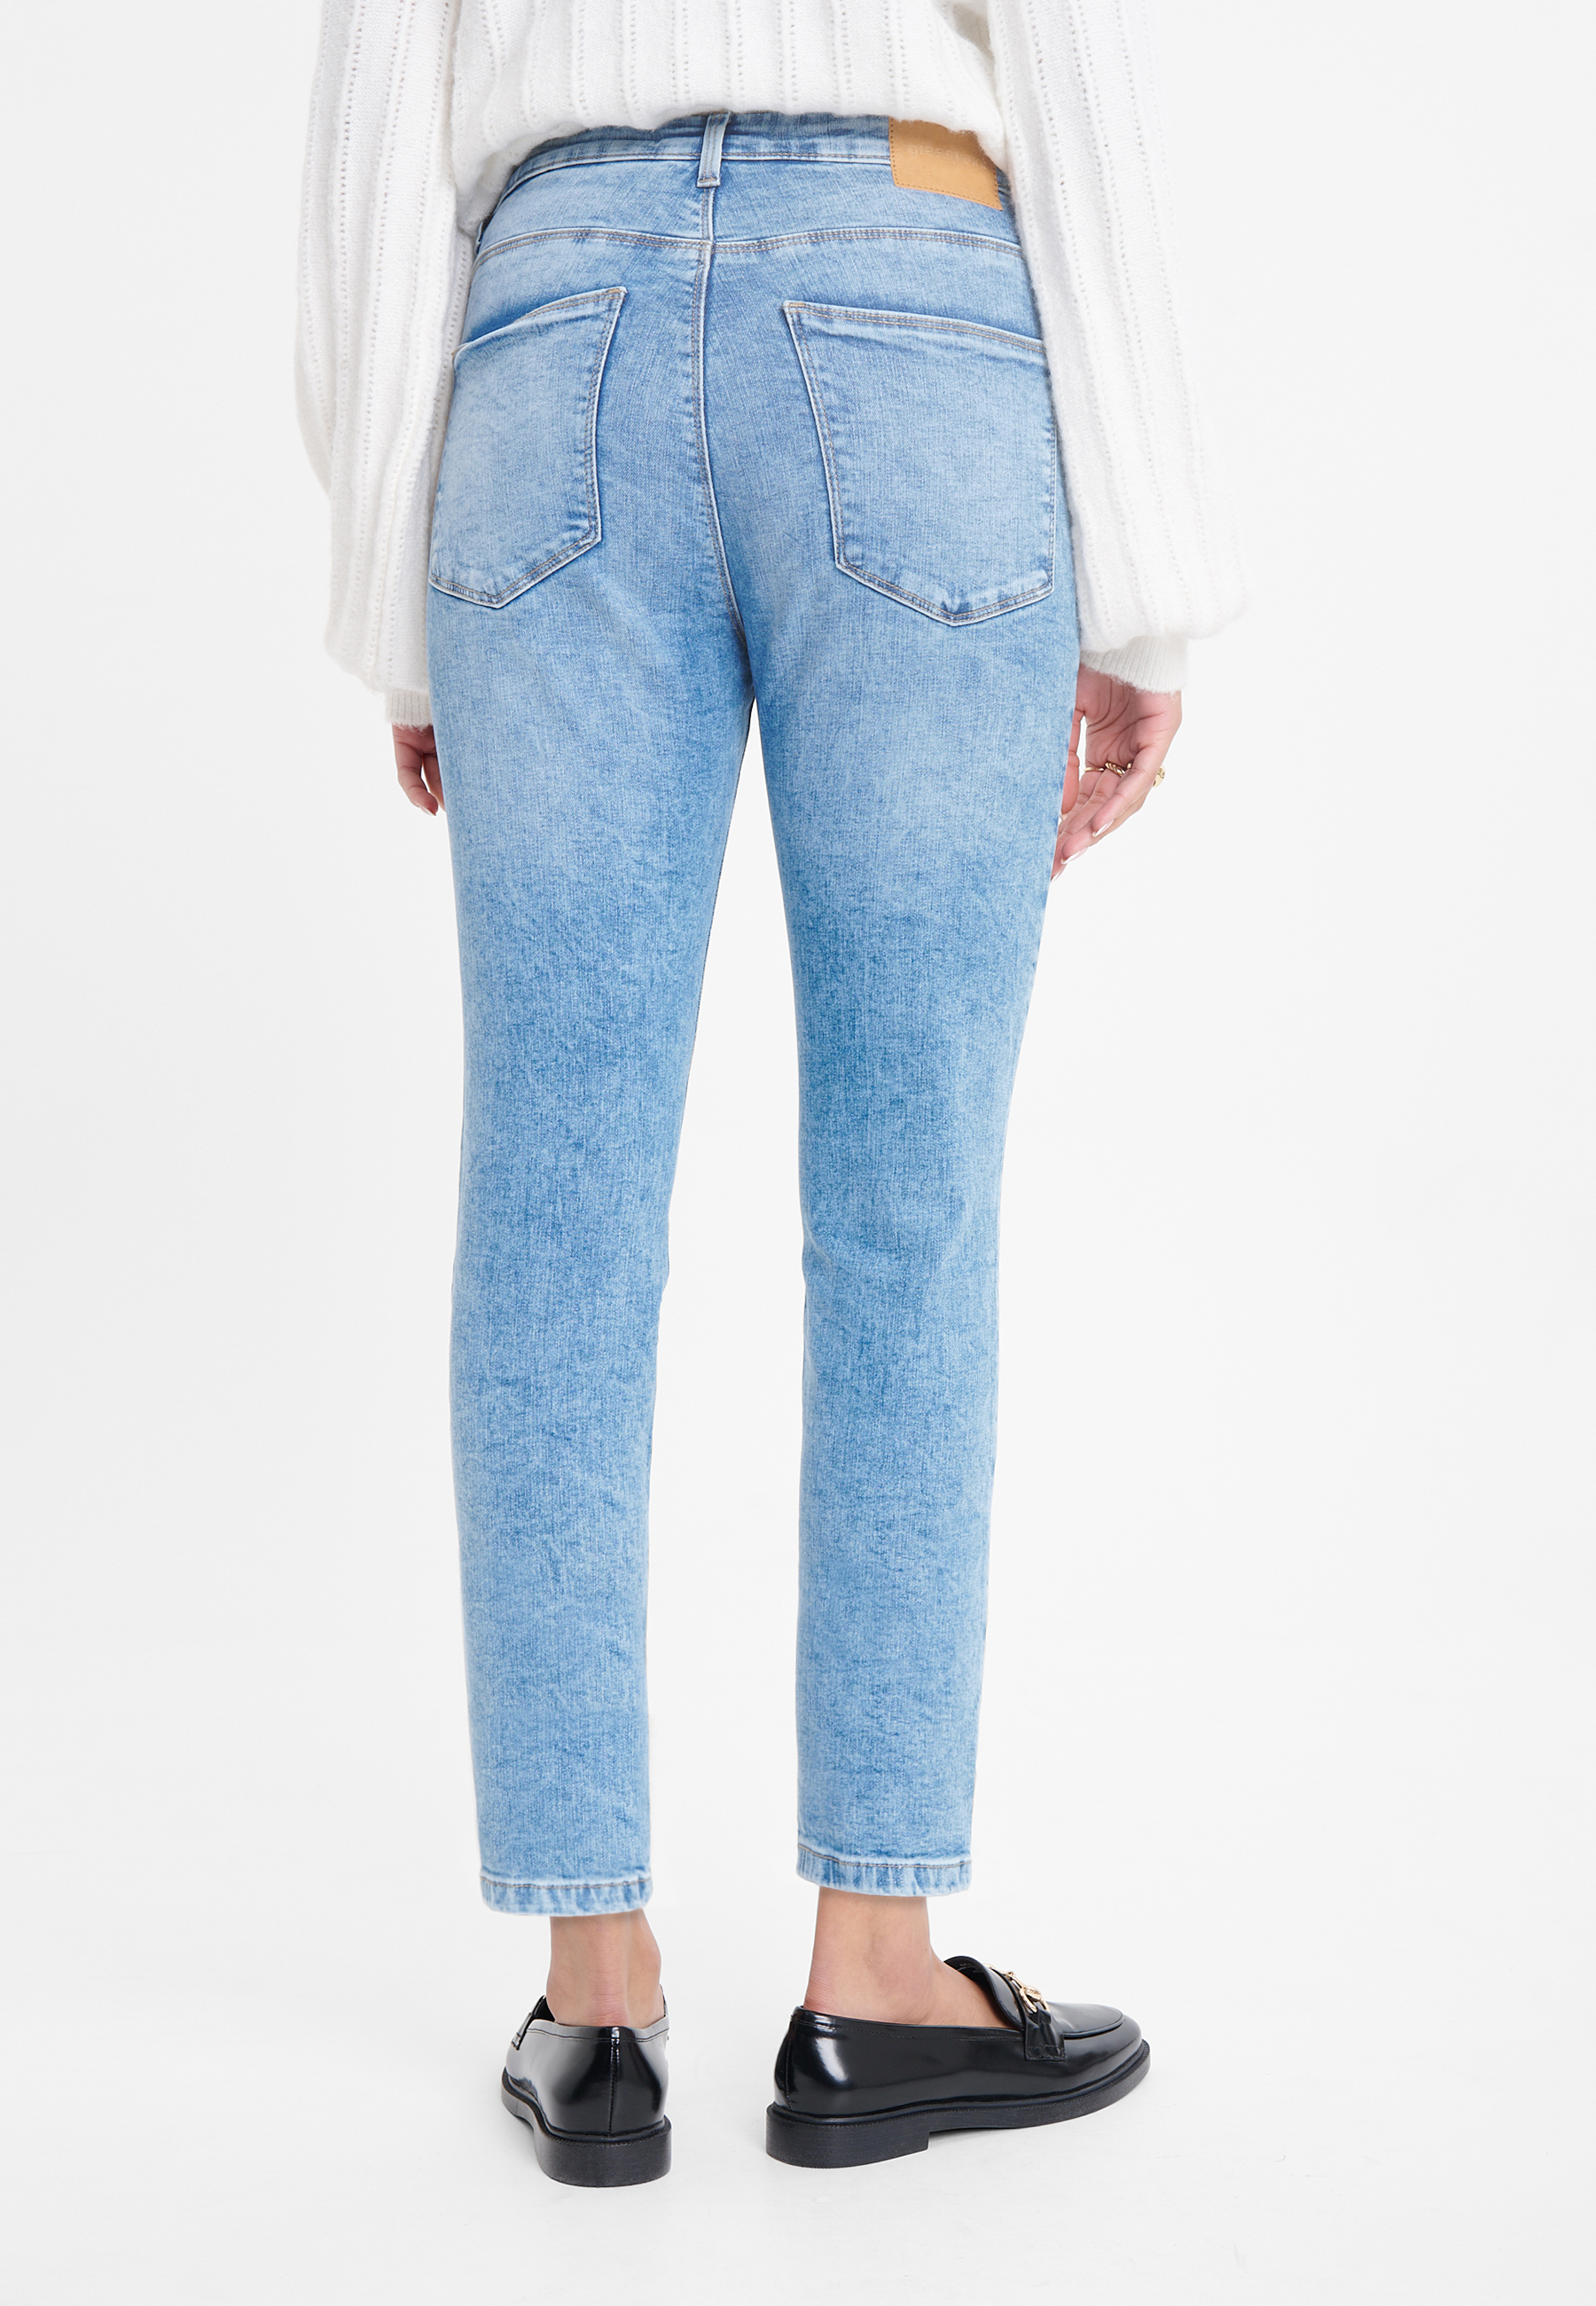 Spodnie jeansowe w jasnoniebieskim kolorze